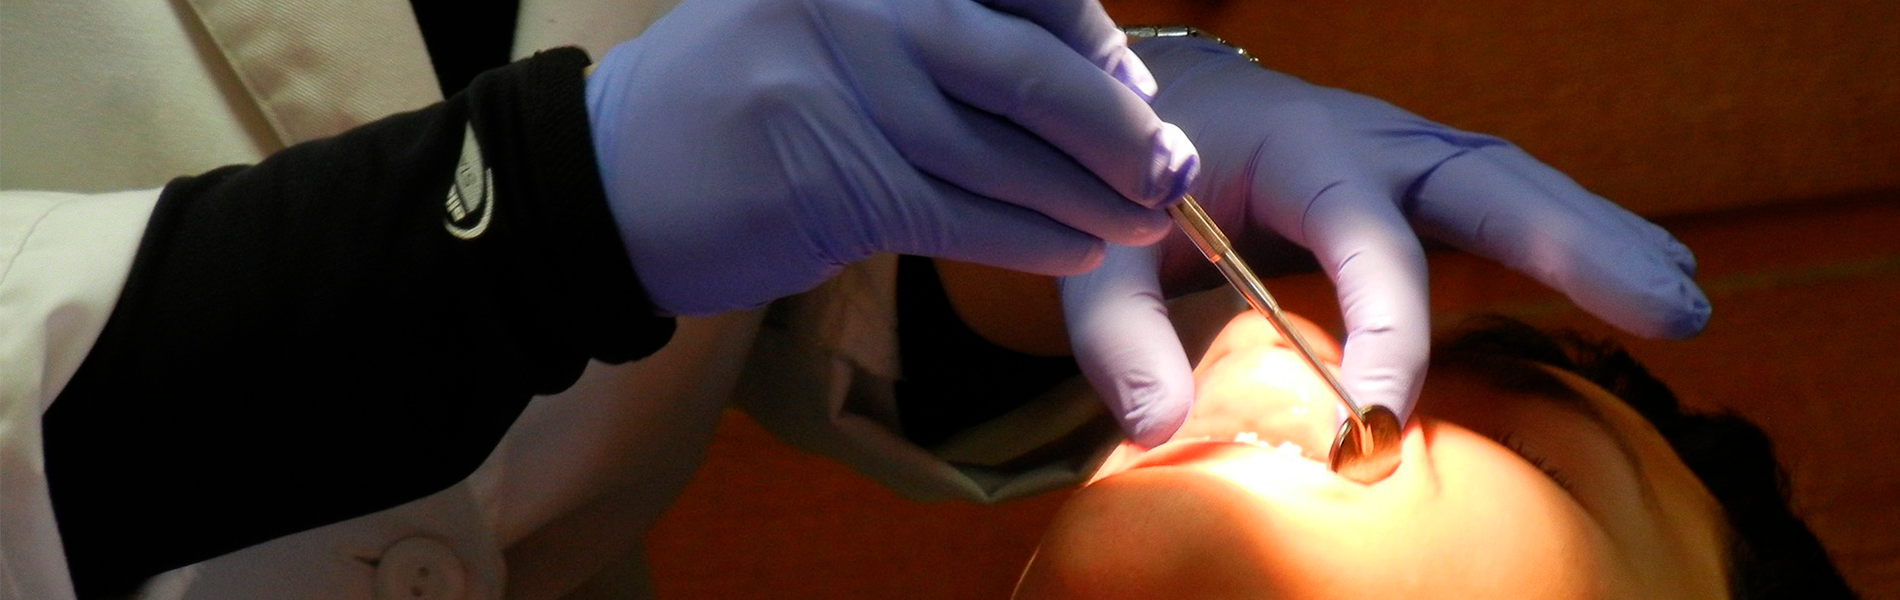 Imagem de dentista realizando procedimento em paciente